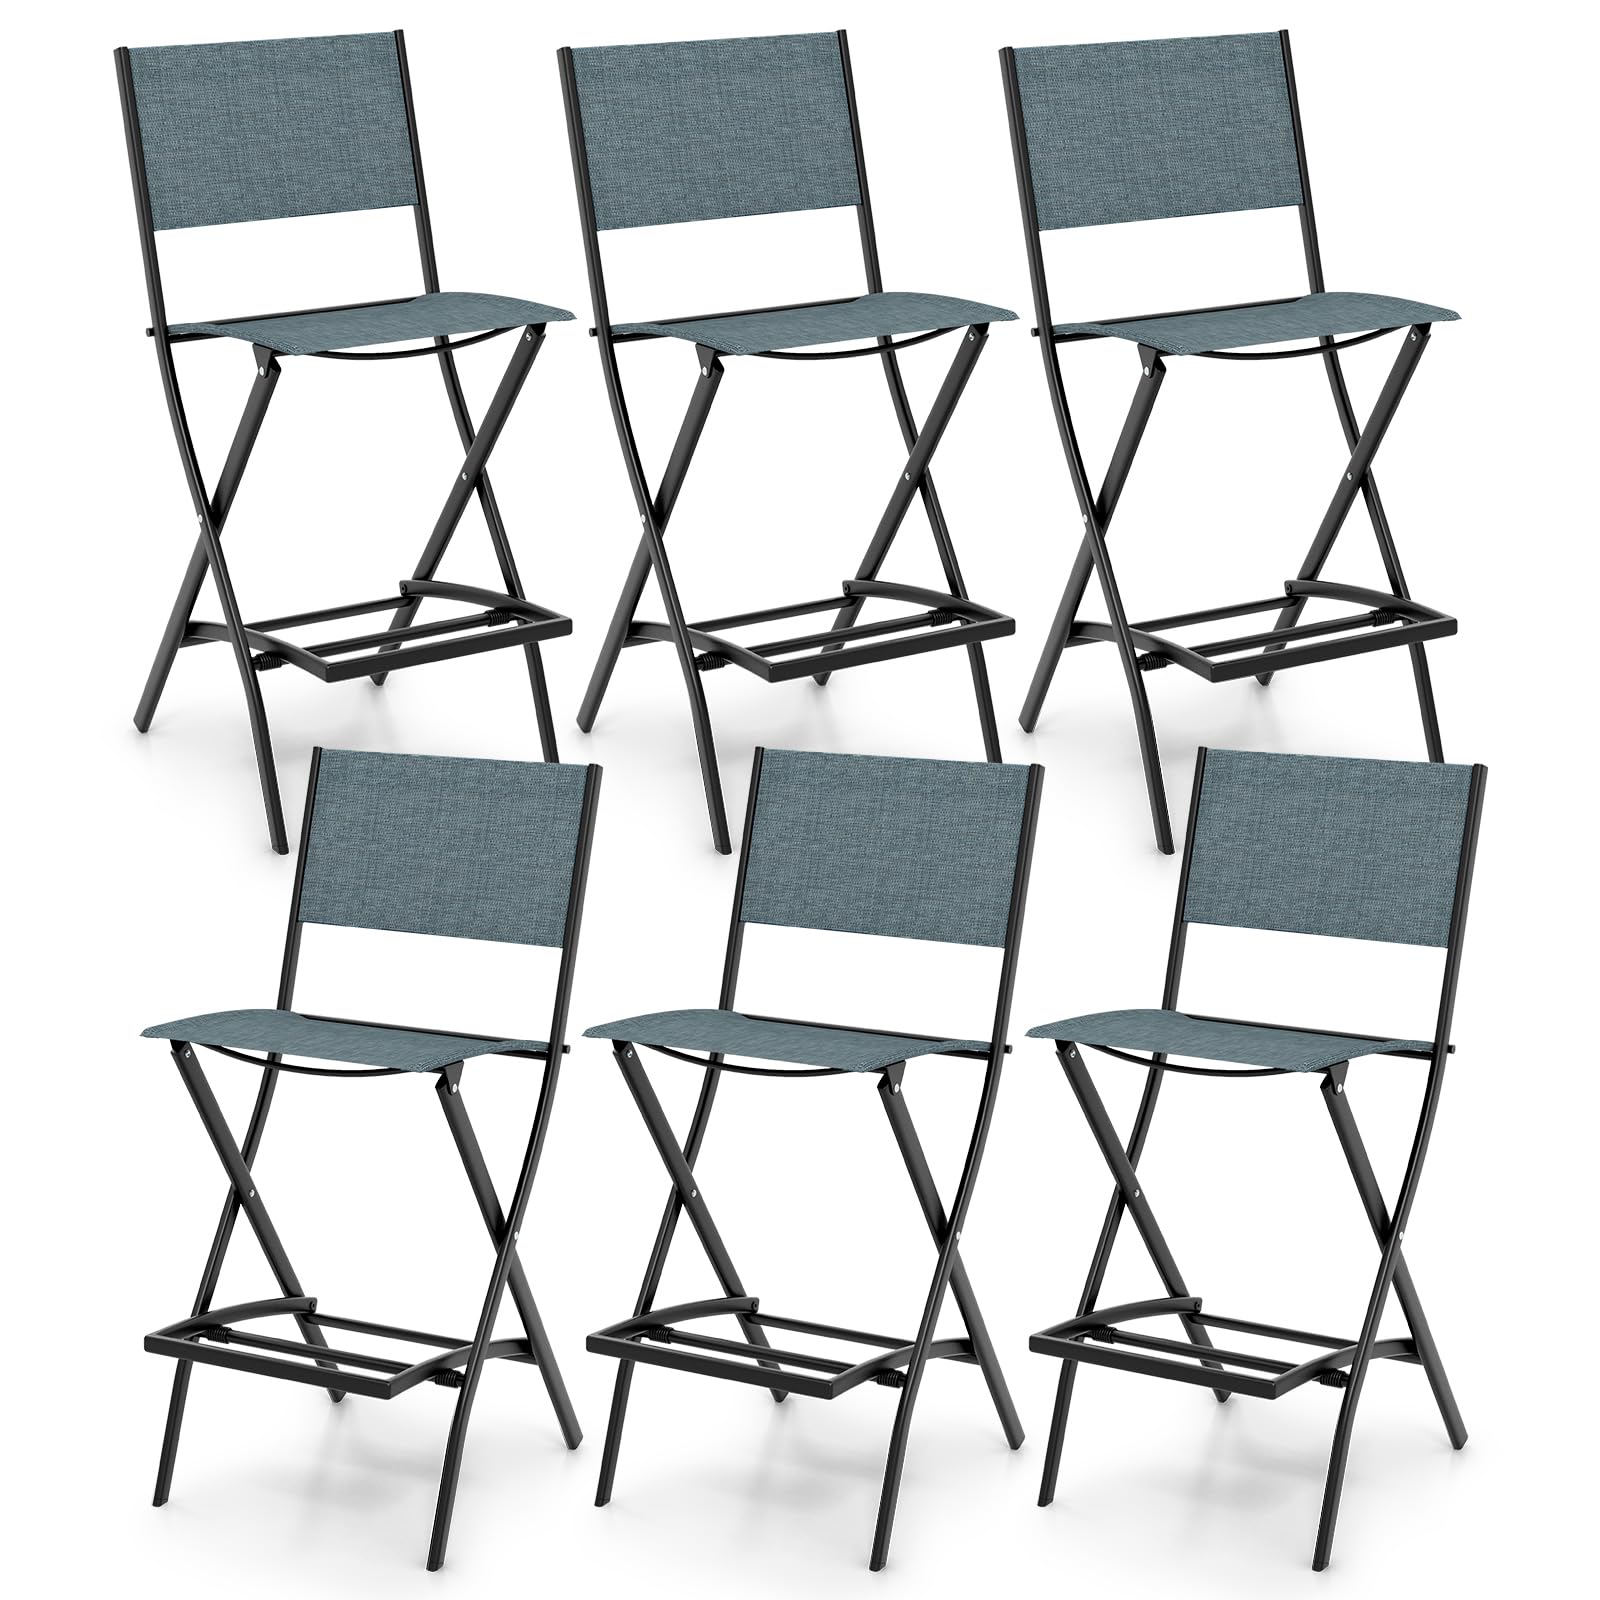 Giantex Folding Patio Bar Chairs Set of 6